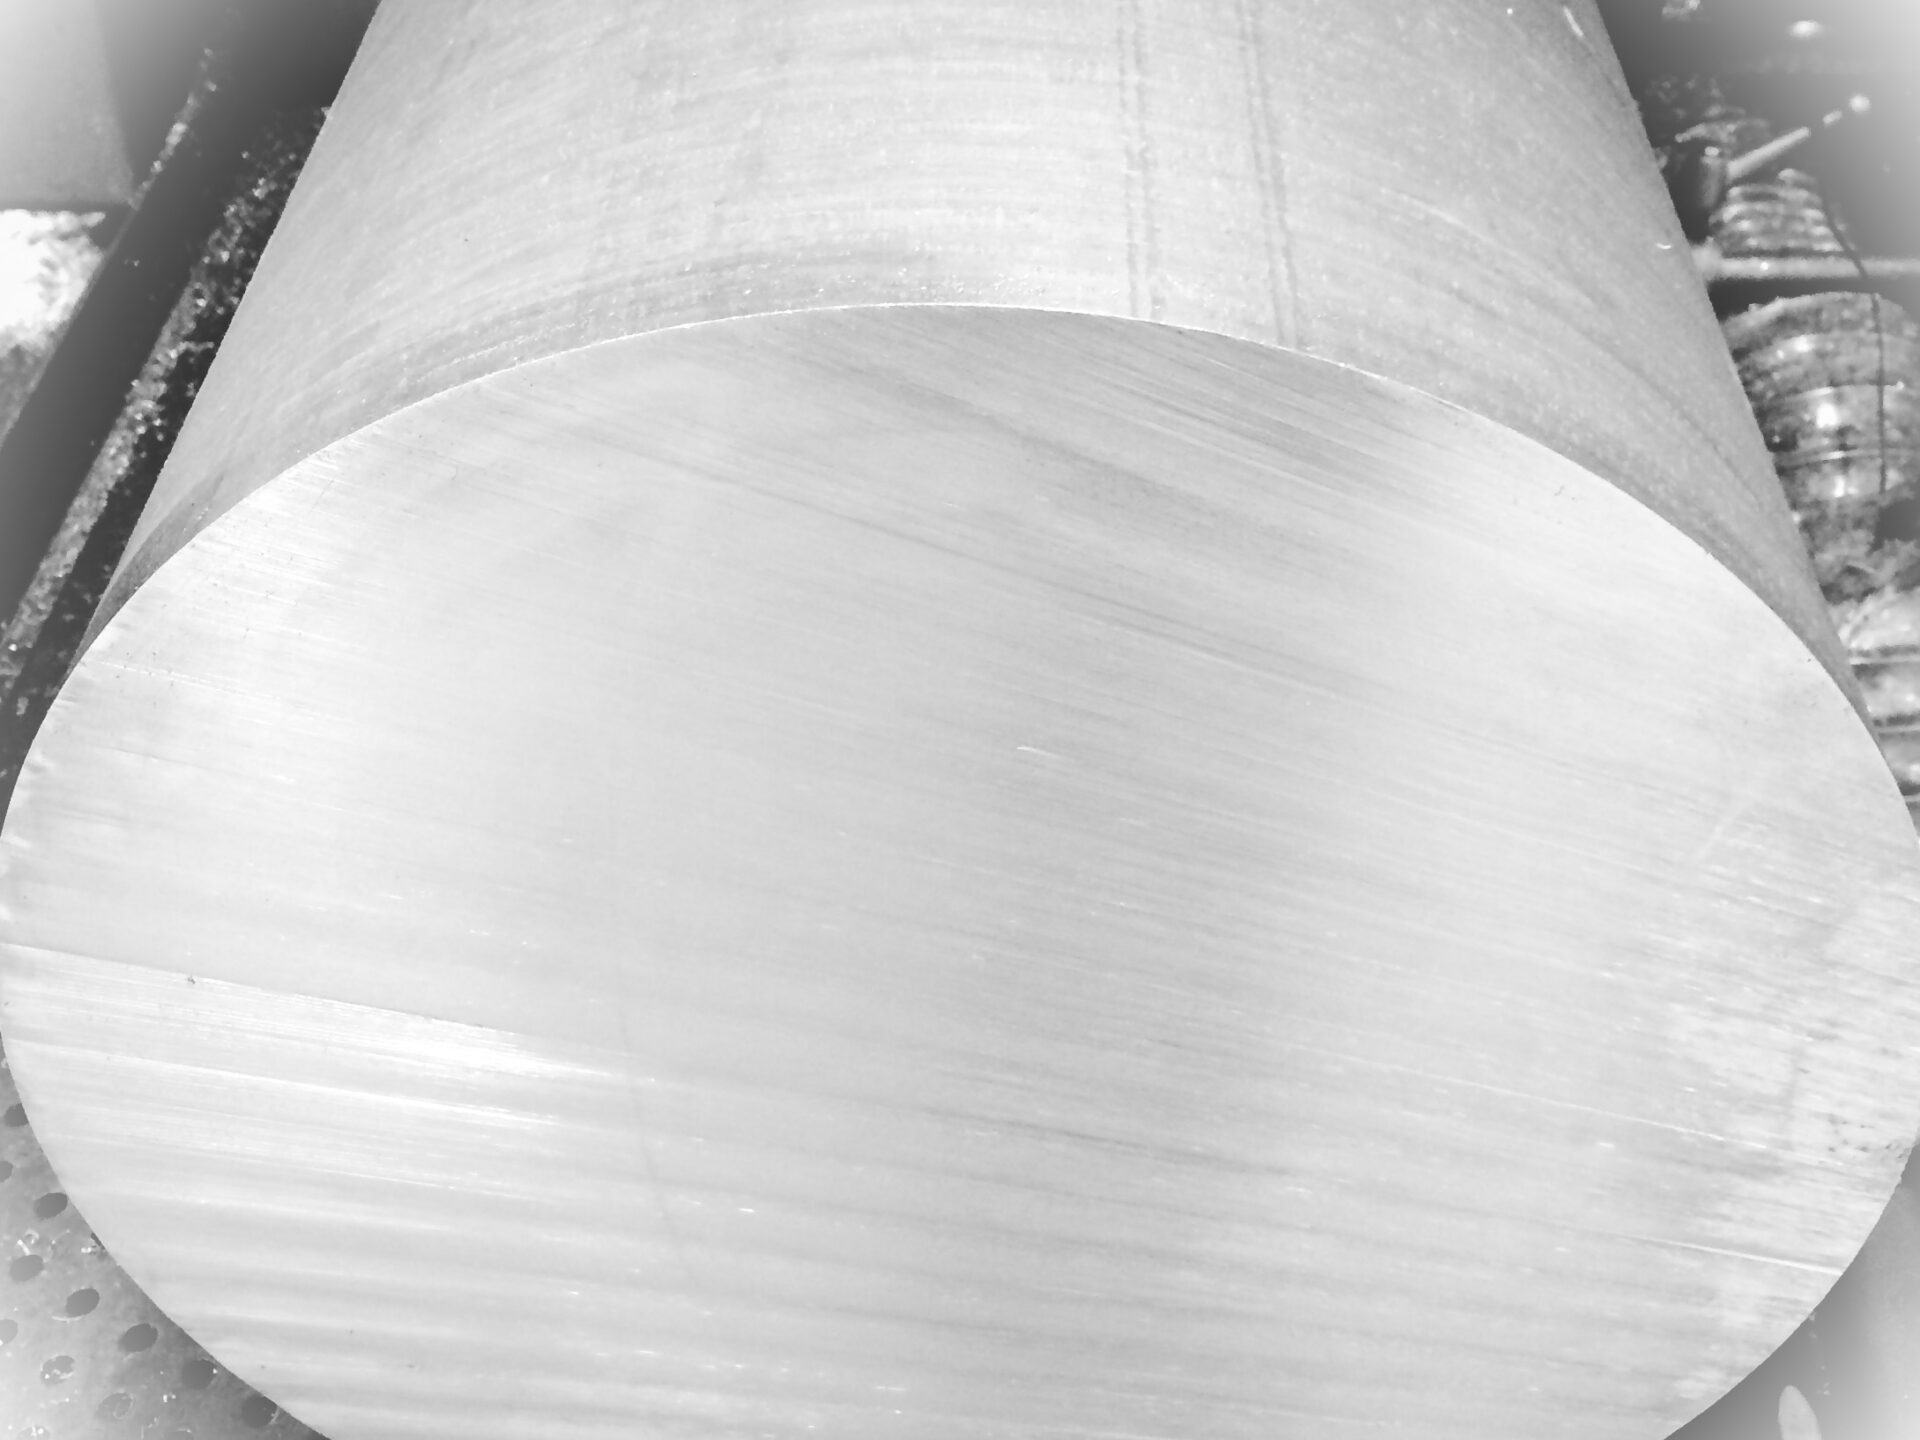 aluminium et cetera är en kompetent aluminiumleverantör